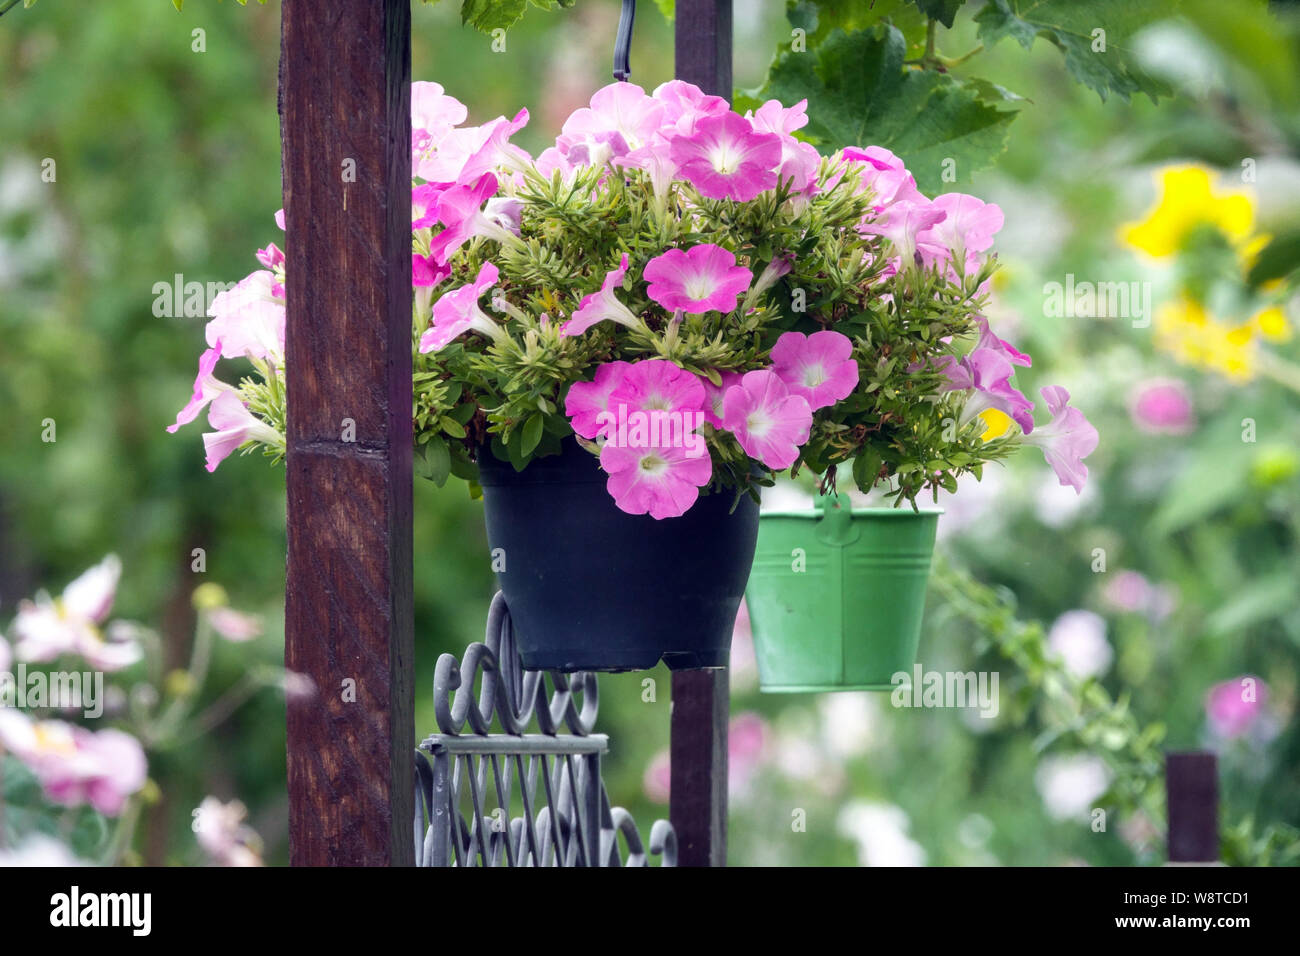 Hängende bunte Pflanzen in Töpfen, Garten Blumen, Petunien Stockfoto